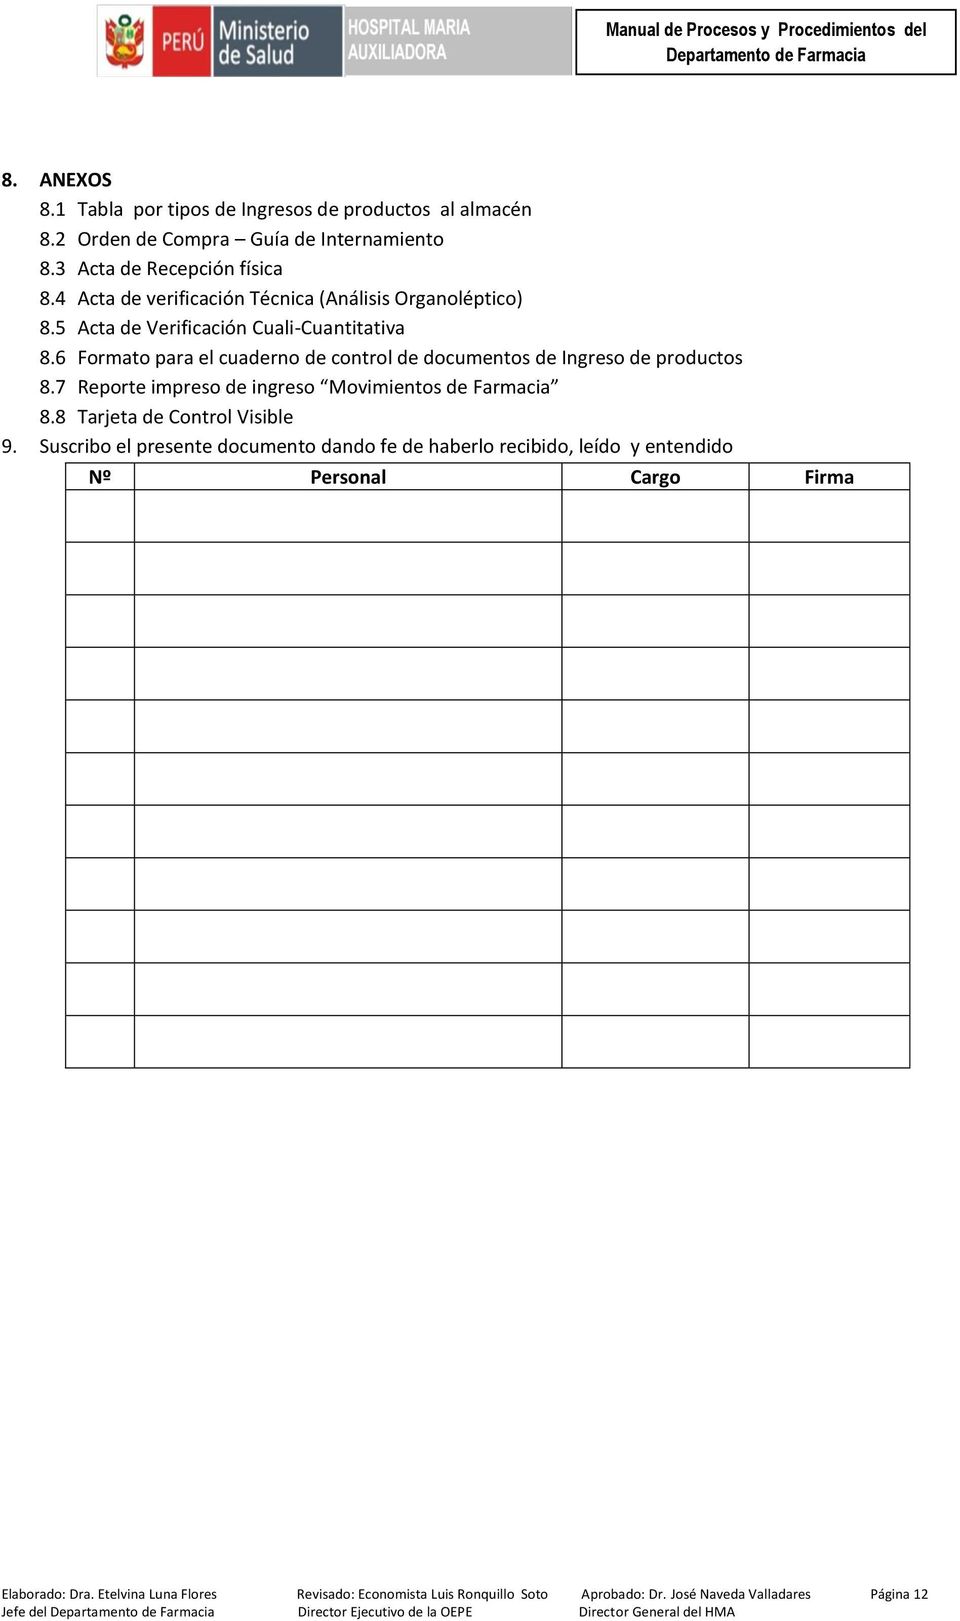 6 Formato para el cuaderno de control de documentos de Ingreso de productos 8.7 Reporte impreso de ingreso Movimientos de Farmacia 8.